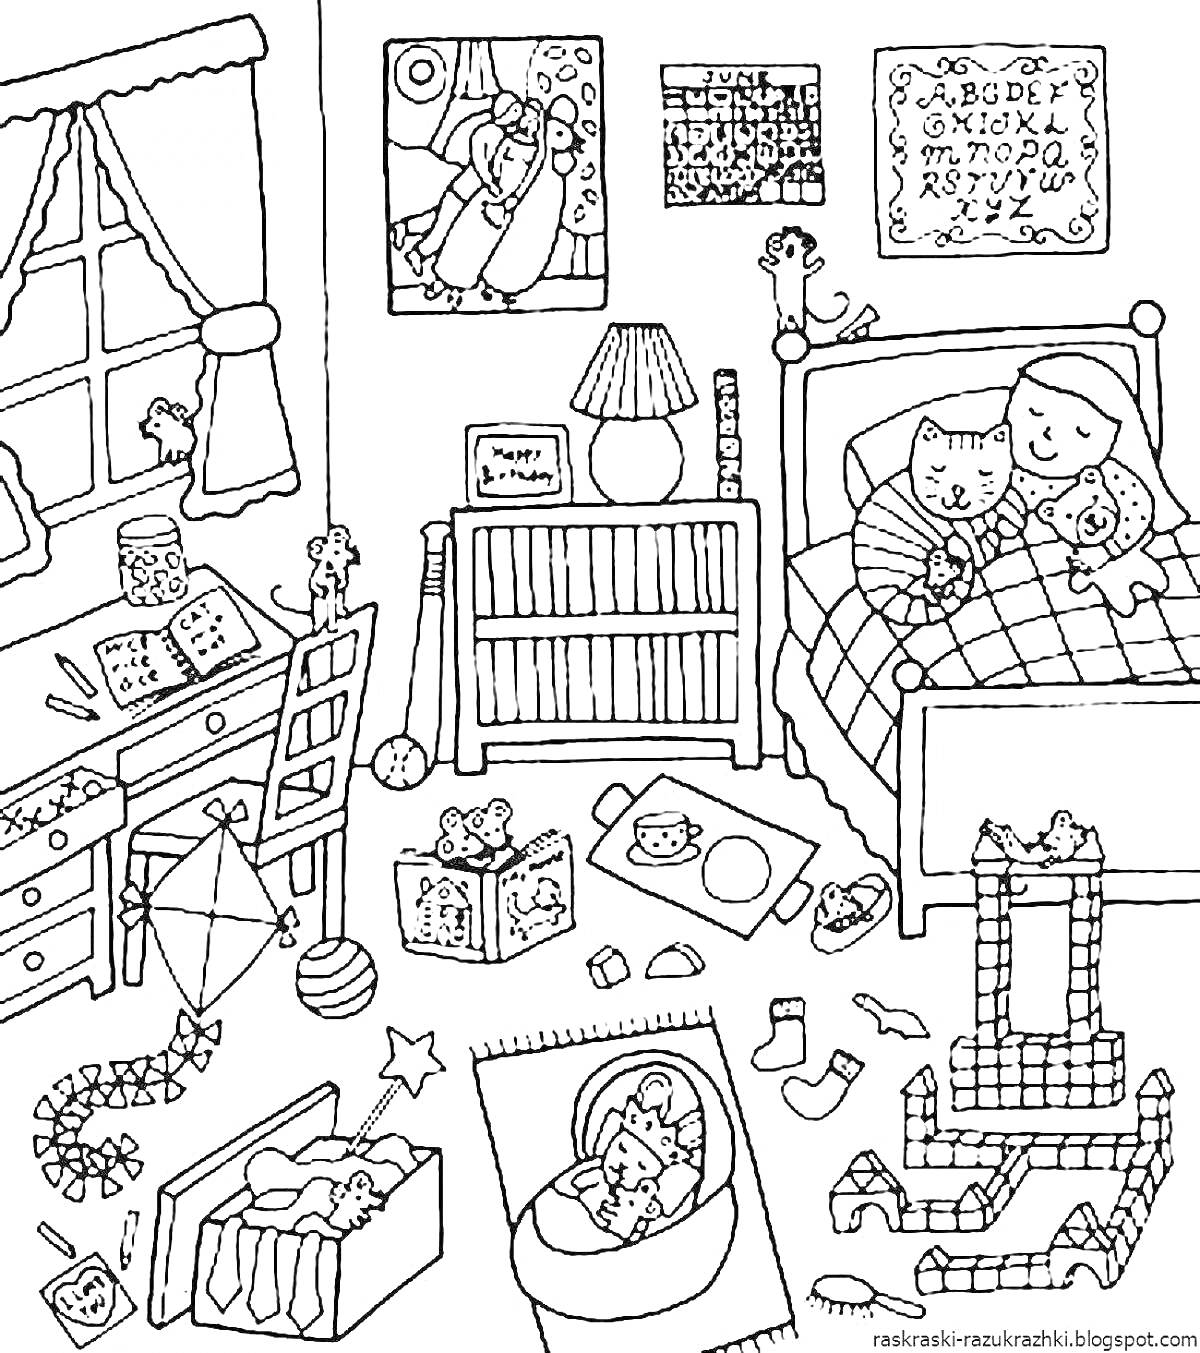 Раскраска Игровая комната с кроватью, столом, шкафом, комодом, игрушками, детской кроваткой и предметами интерьера